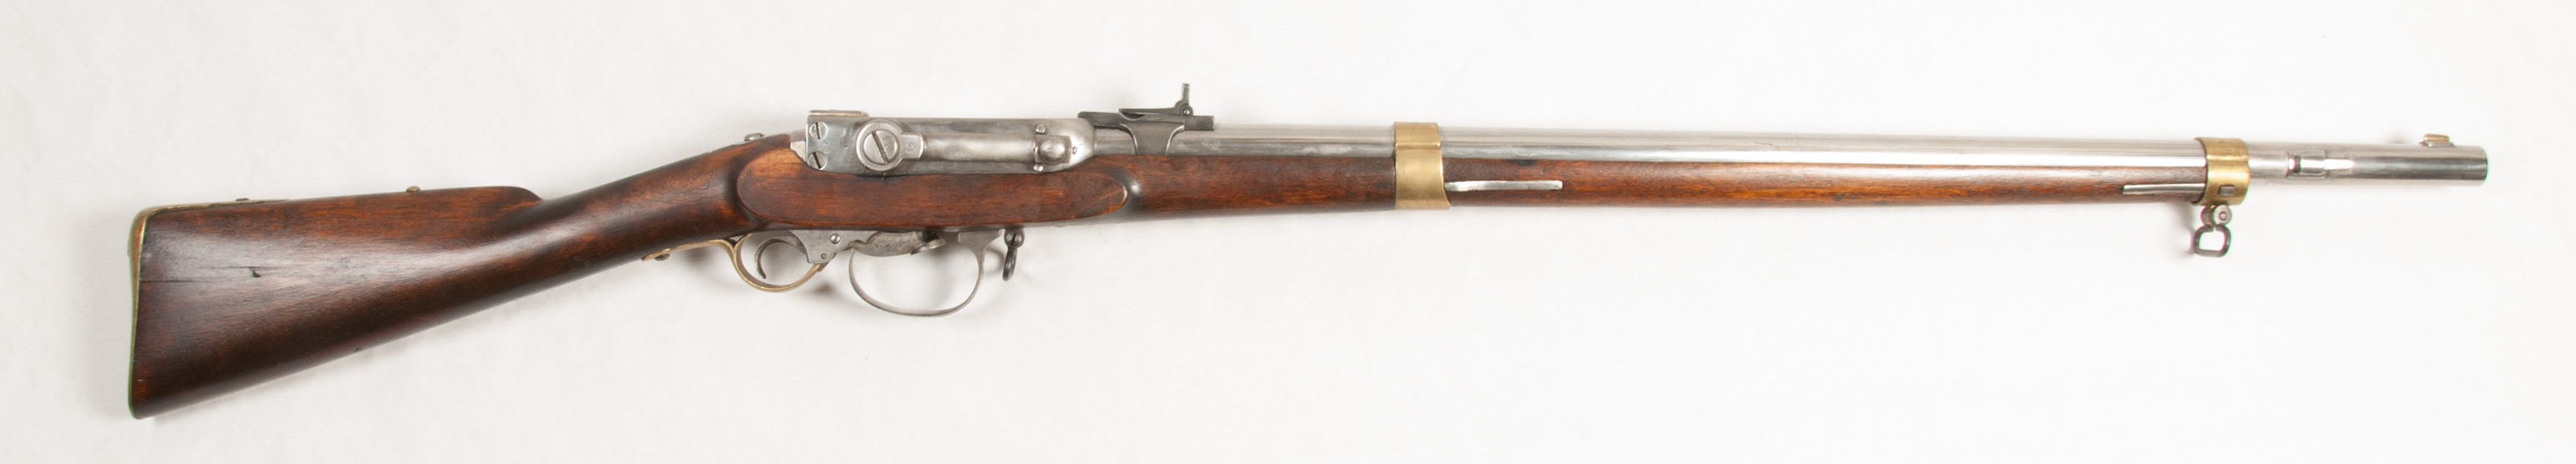 ./guns/rifle/bilder/Rifle-Kongsberg-Kammerlader-M1848-57-Modell-I-21-1.jpg